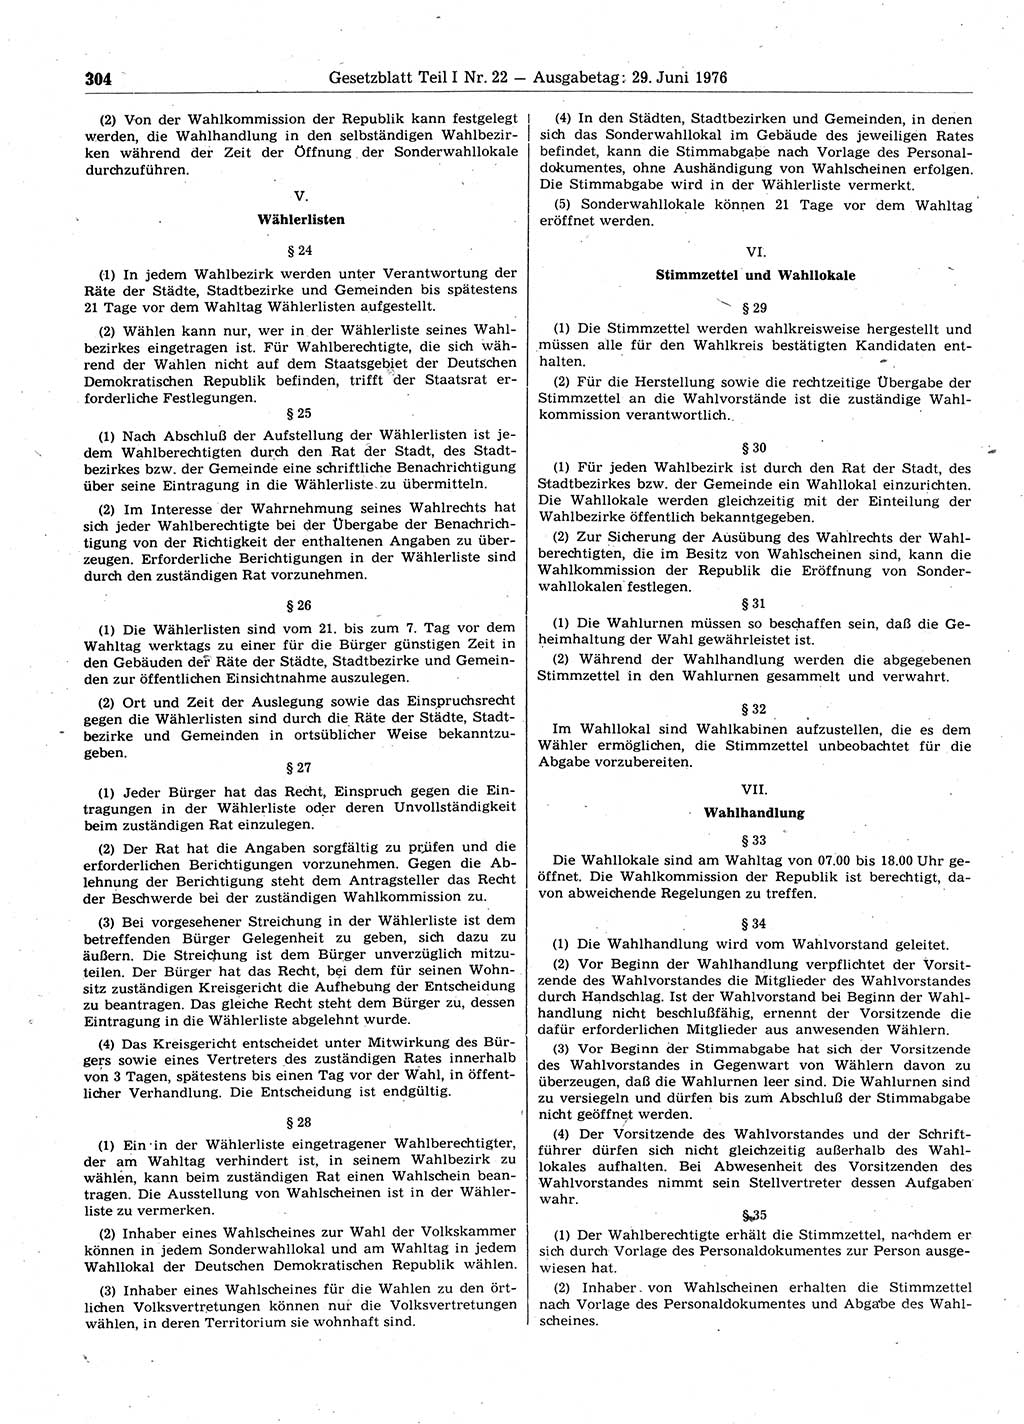 Gesetzblatt (GBl.) der Deutschen Demokratischen Republik (DDR) Teil Ⅰ 1976, Seite 304 (GBl. DDR Ⅰ 1976, S. 304)